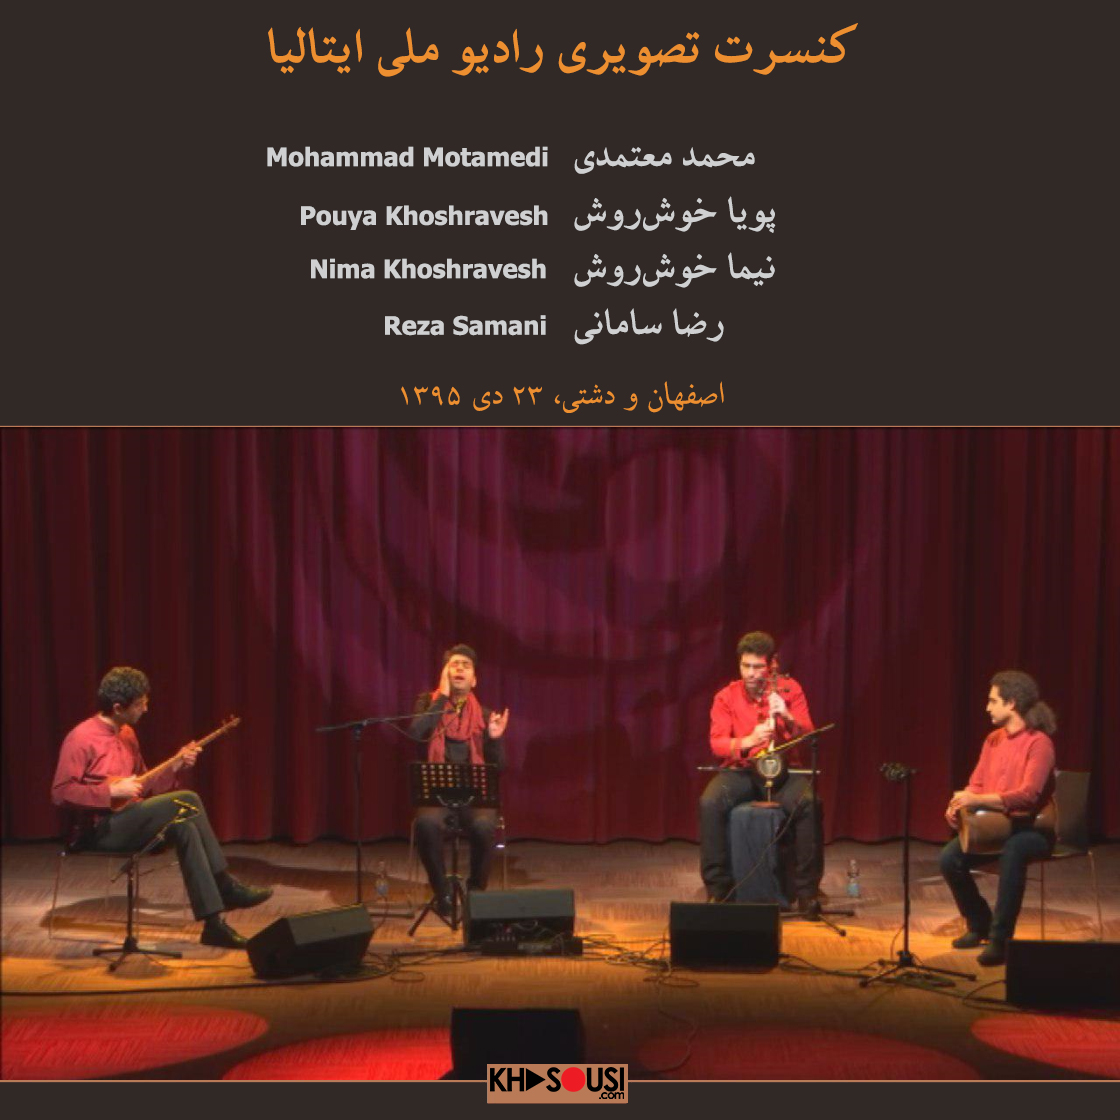 کنسرت تصویری رادیو ملی ایتالیا - محمد معتمدی و گروه دوستی